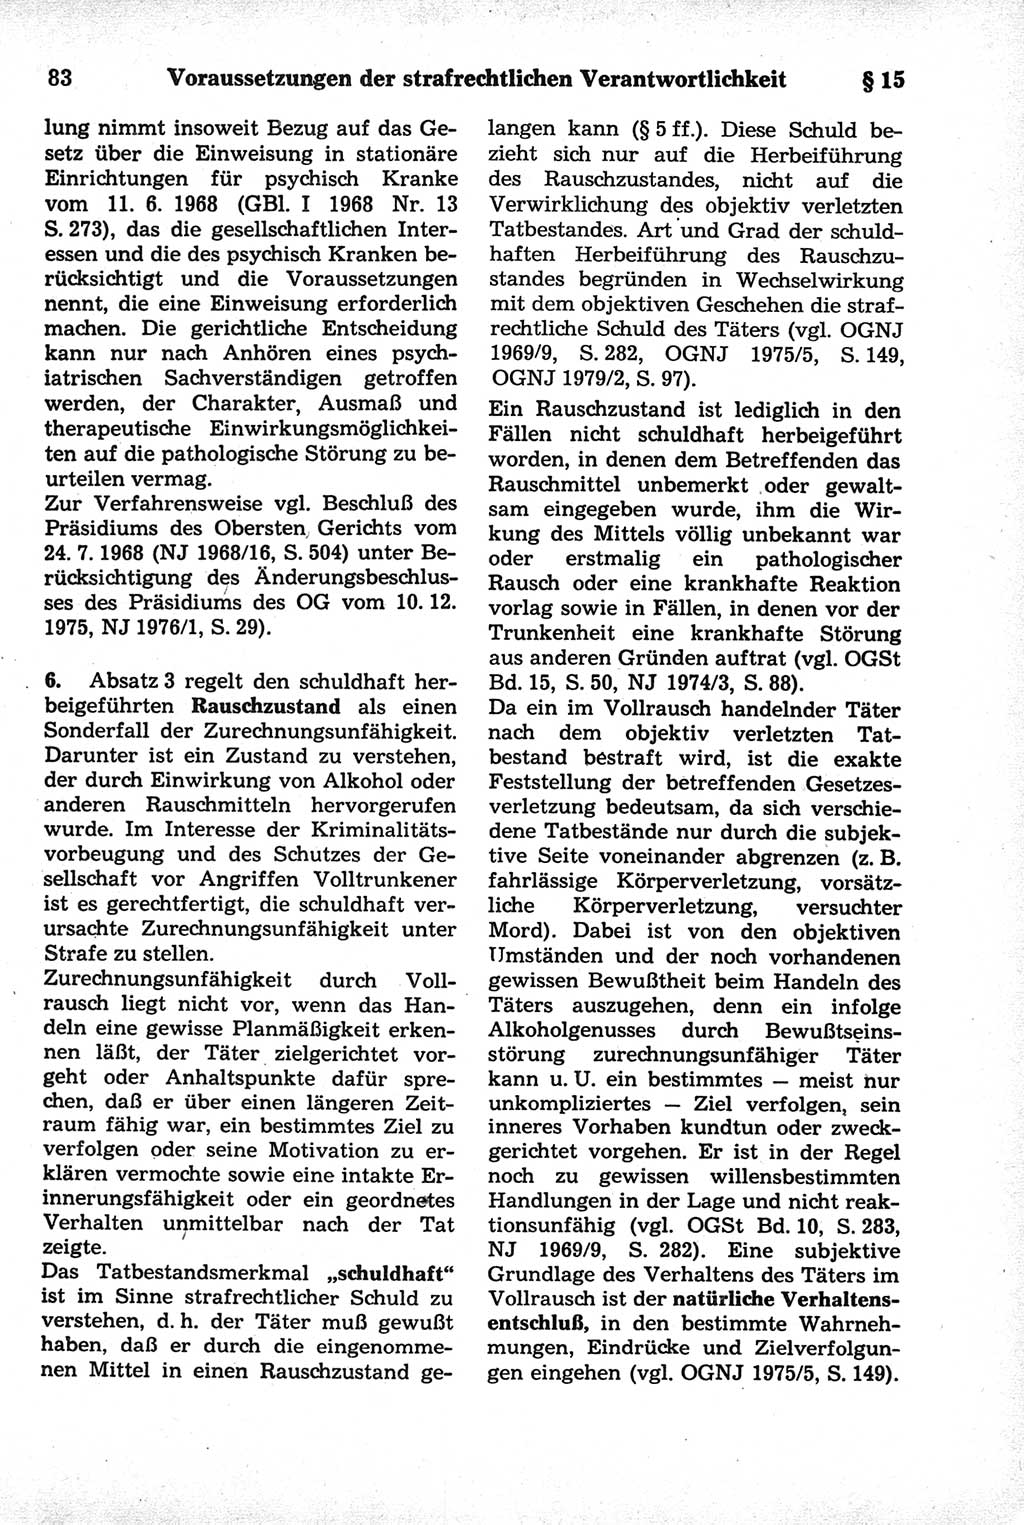 Strafrecht der Deutschen Demokratischen Republik (DDR), Kommentar zum Strafgesetzbuch (StGB) 1981, Seite 83 (Strafr. DDR Komm. StGB 1981, S. 83)